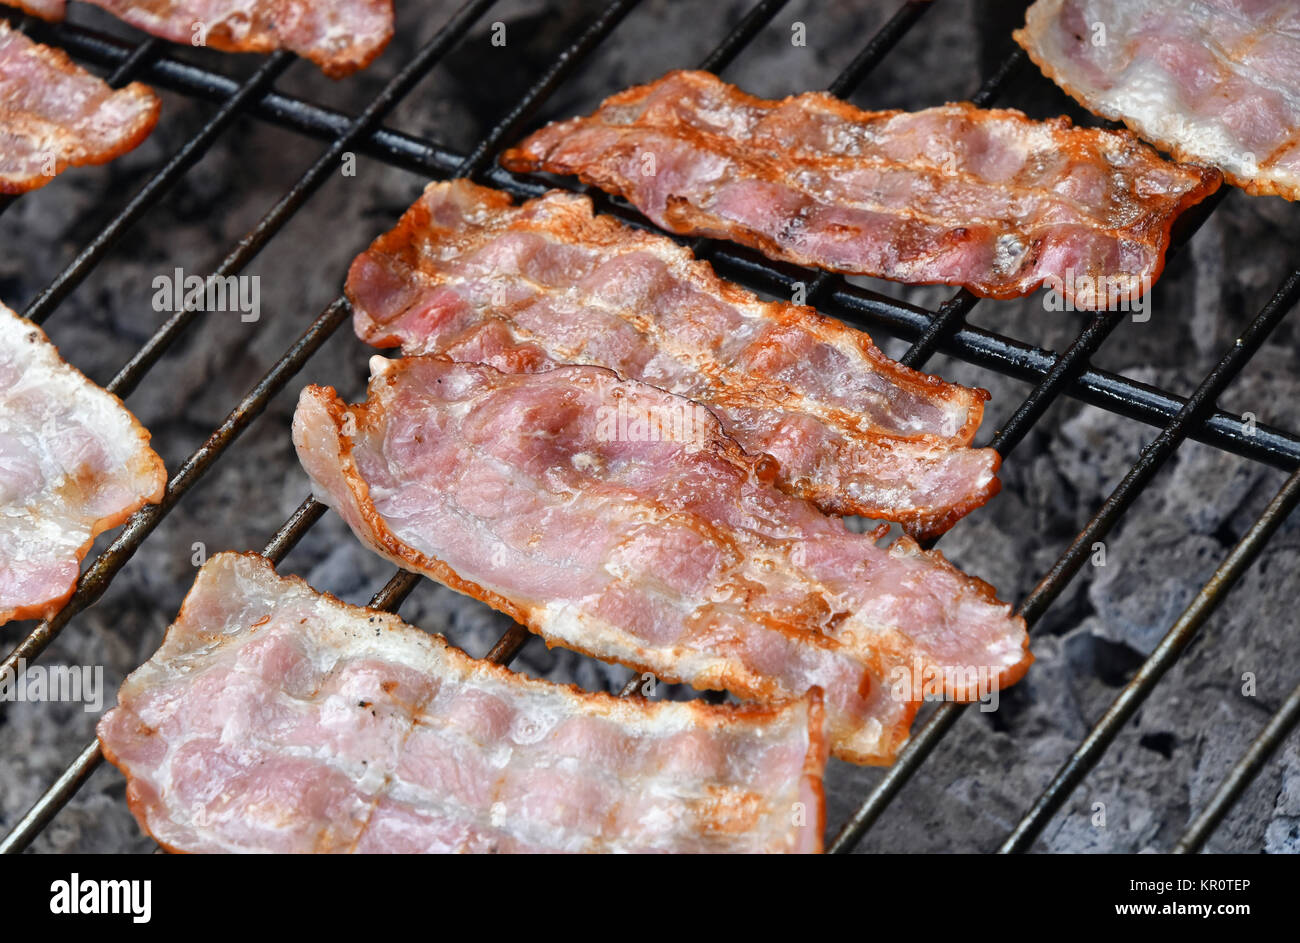 Croccanti fette di pancetta affumicata cotta sulla griglia per il barbecue Foto Stock